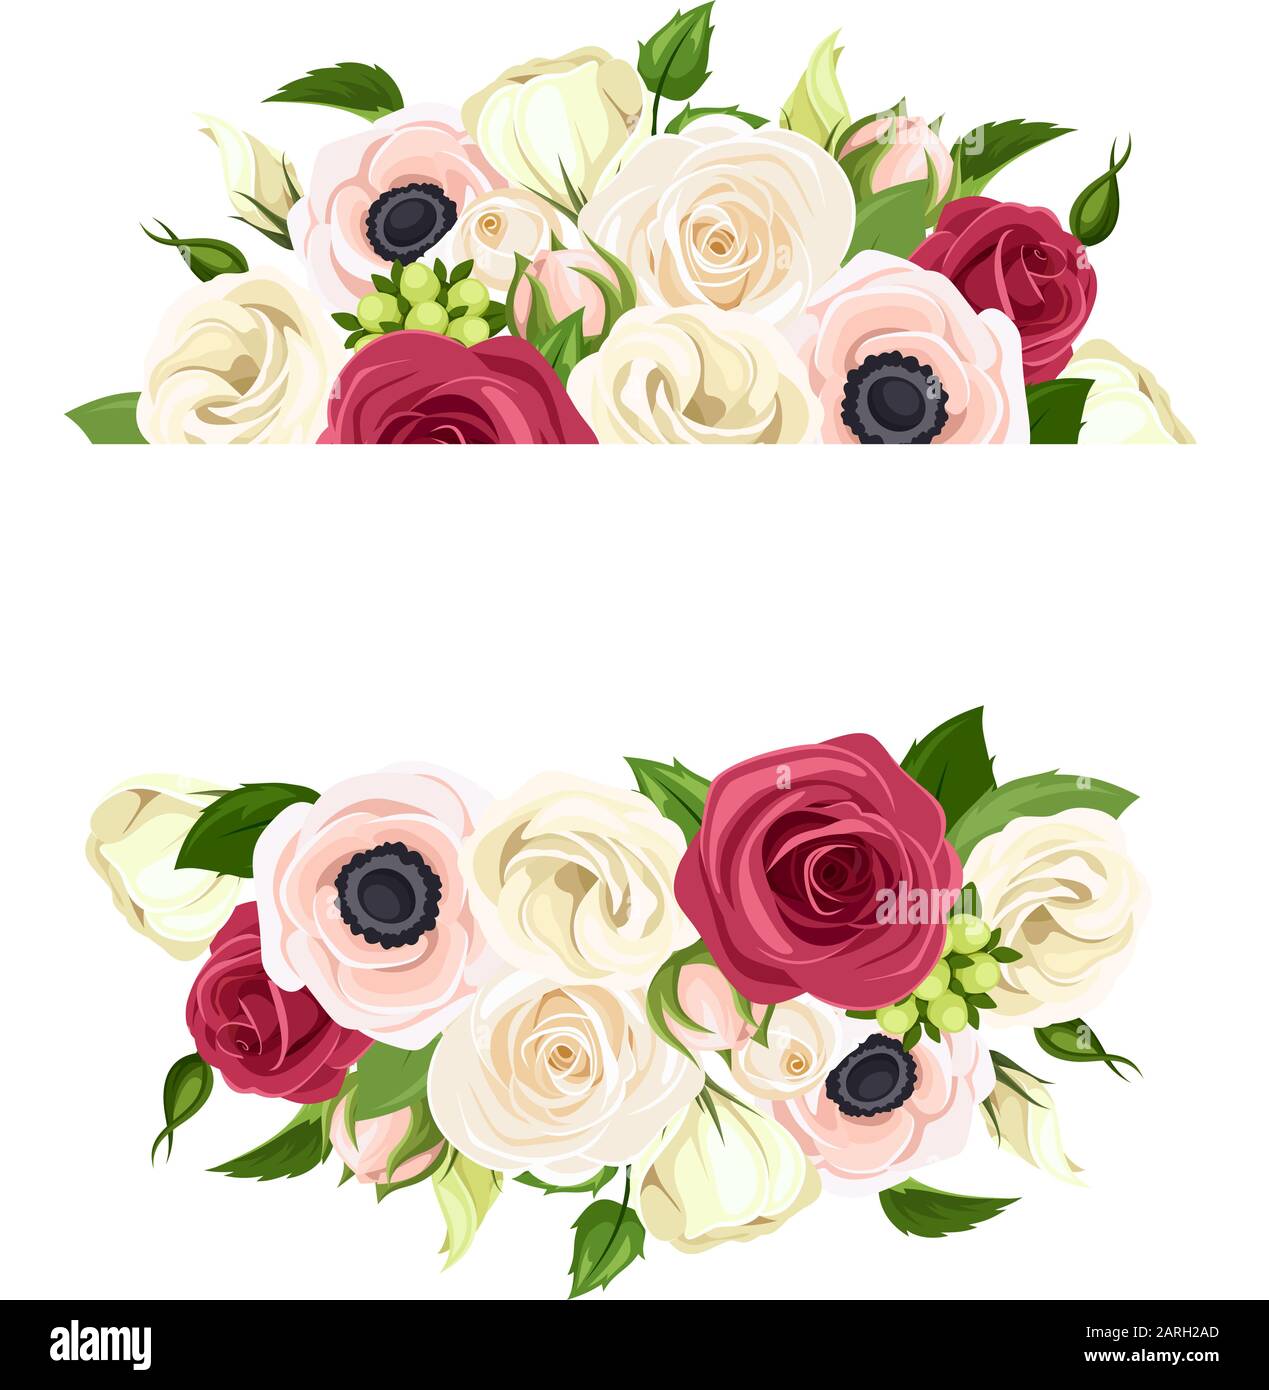 Bandera vectorial con rosas rojas, rosadas y blancas, flores de lisiantones y anémonas y hojas verdes. Ilustración del Vector